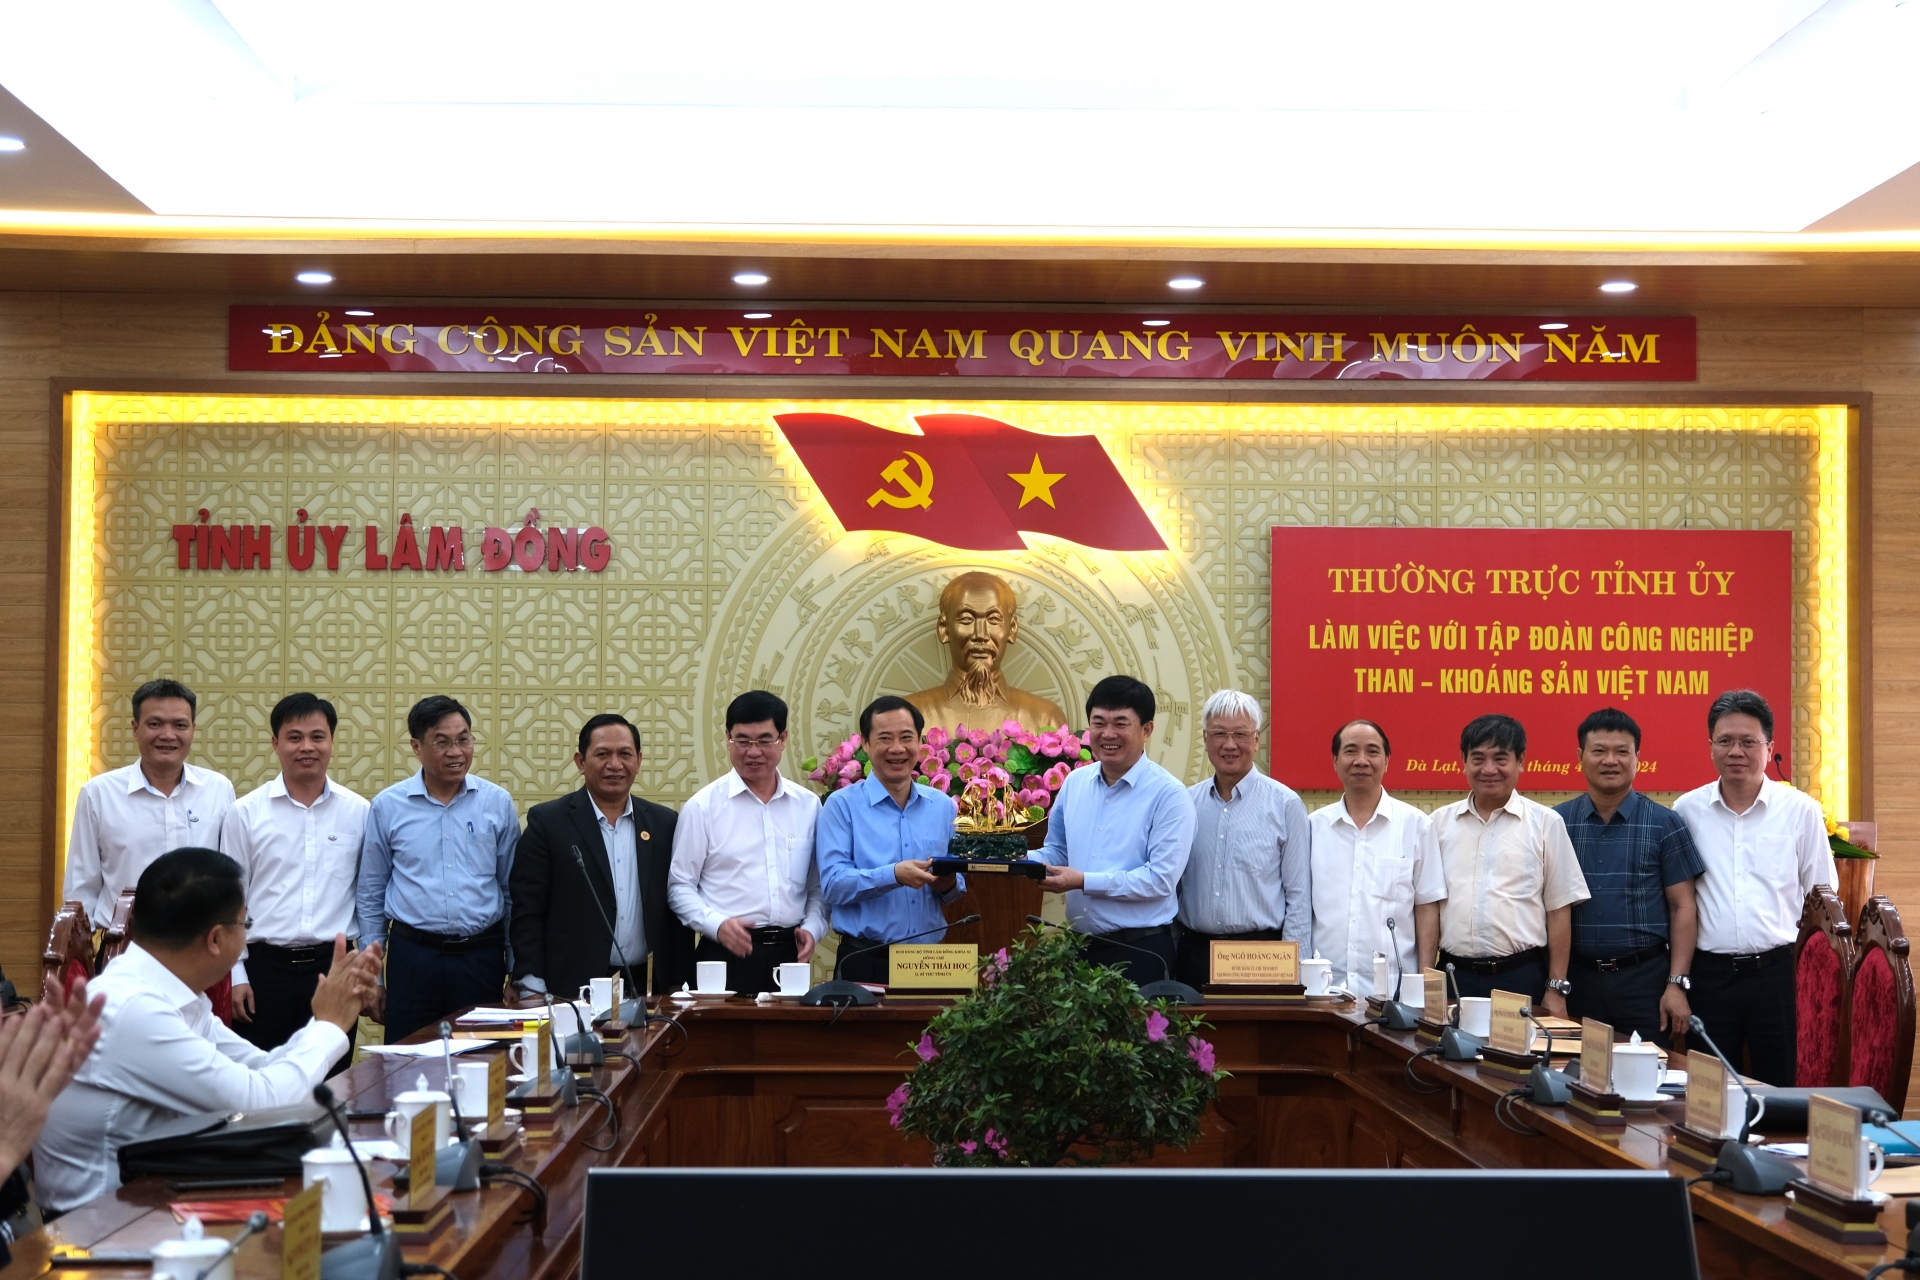 Lãnh đạo Tập đoàn Công nghiệp Than - Khoáng sản Việt Nam tặng quà lưu niệm cho lãnh đạo tỉnh Lâm Đồng